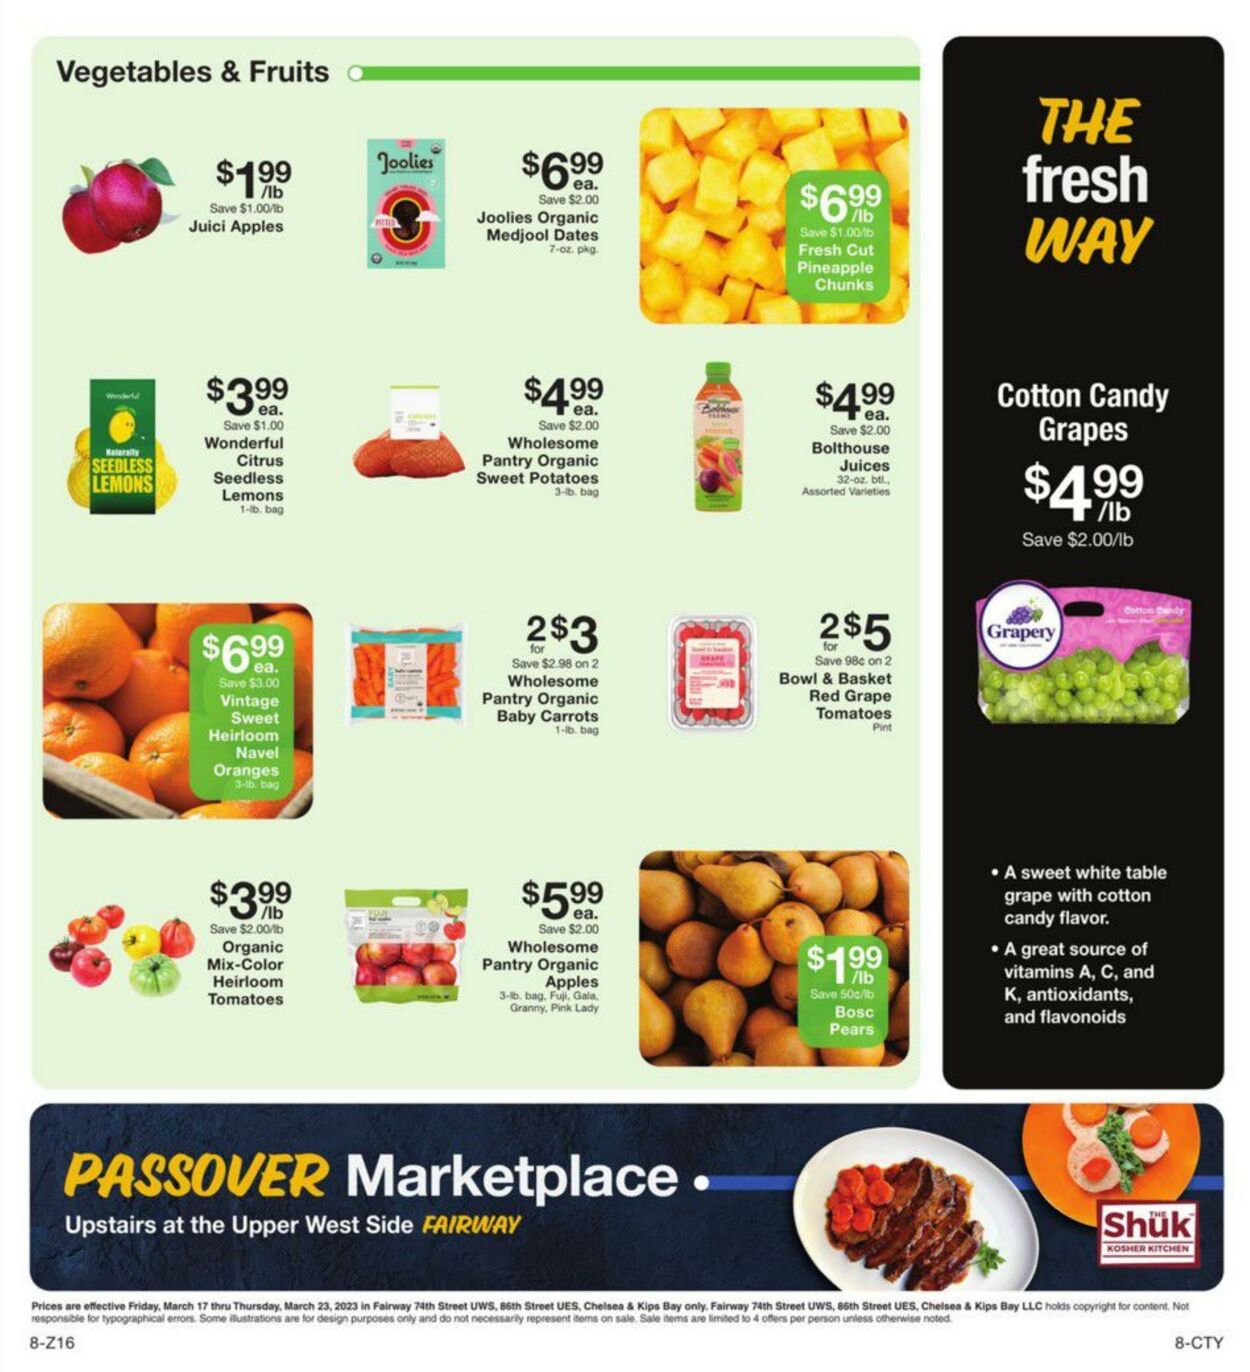 Weekly ad Fairway Market 03/17/2023 - 03/23/2023